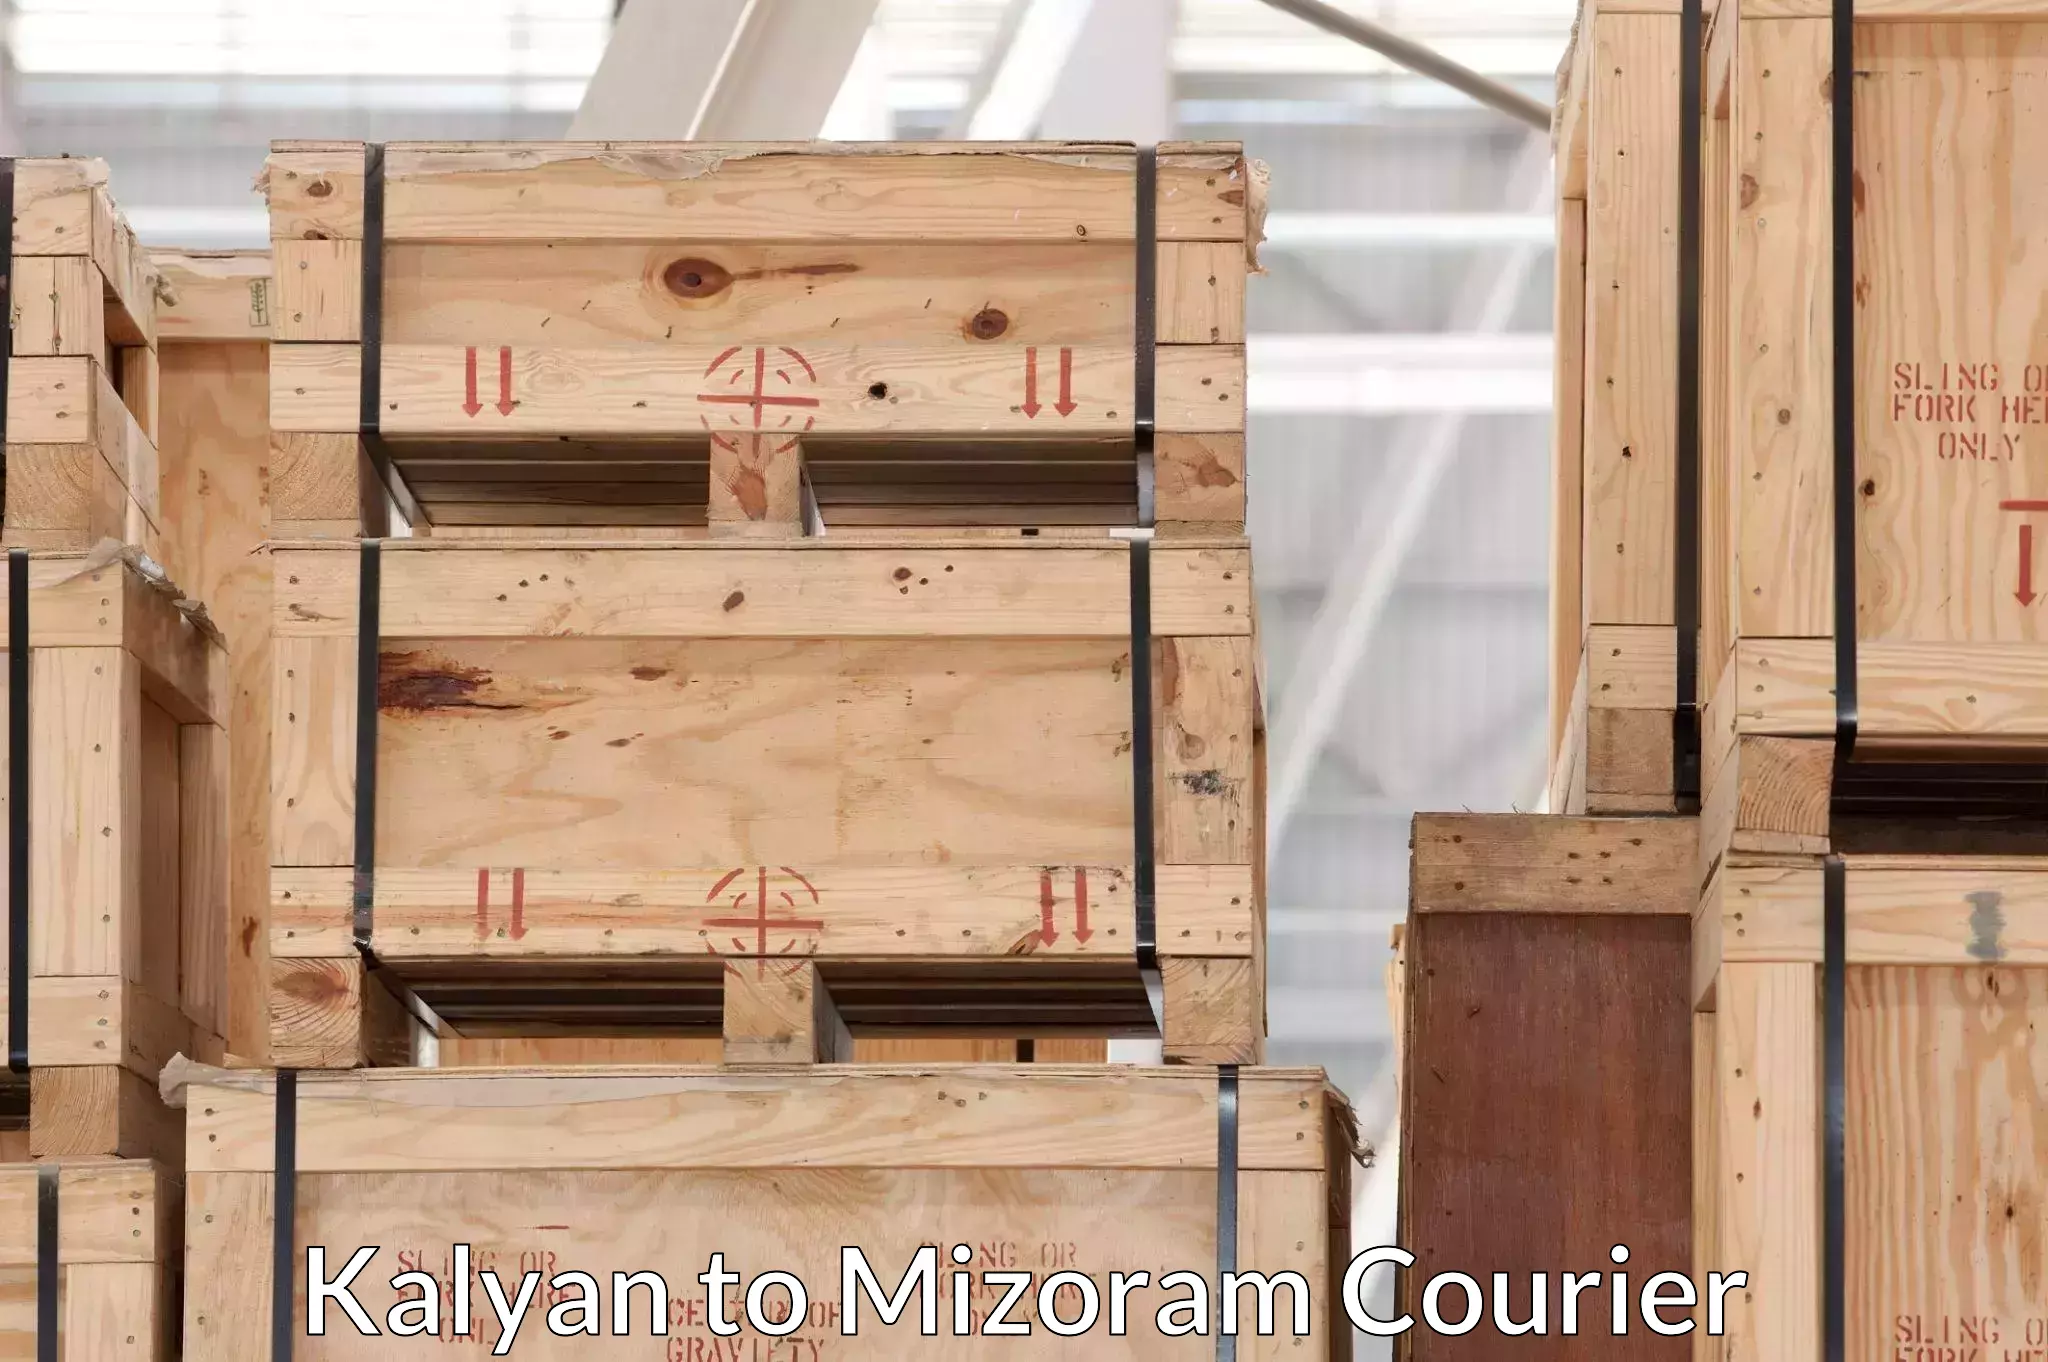 Furniture moving experts Kalyan to Mizoram